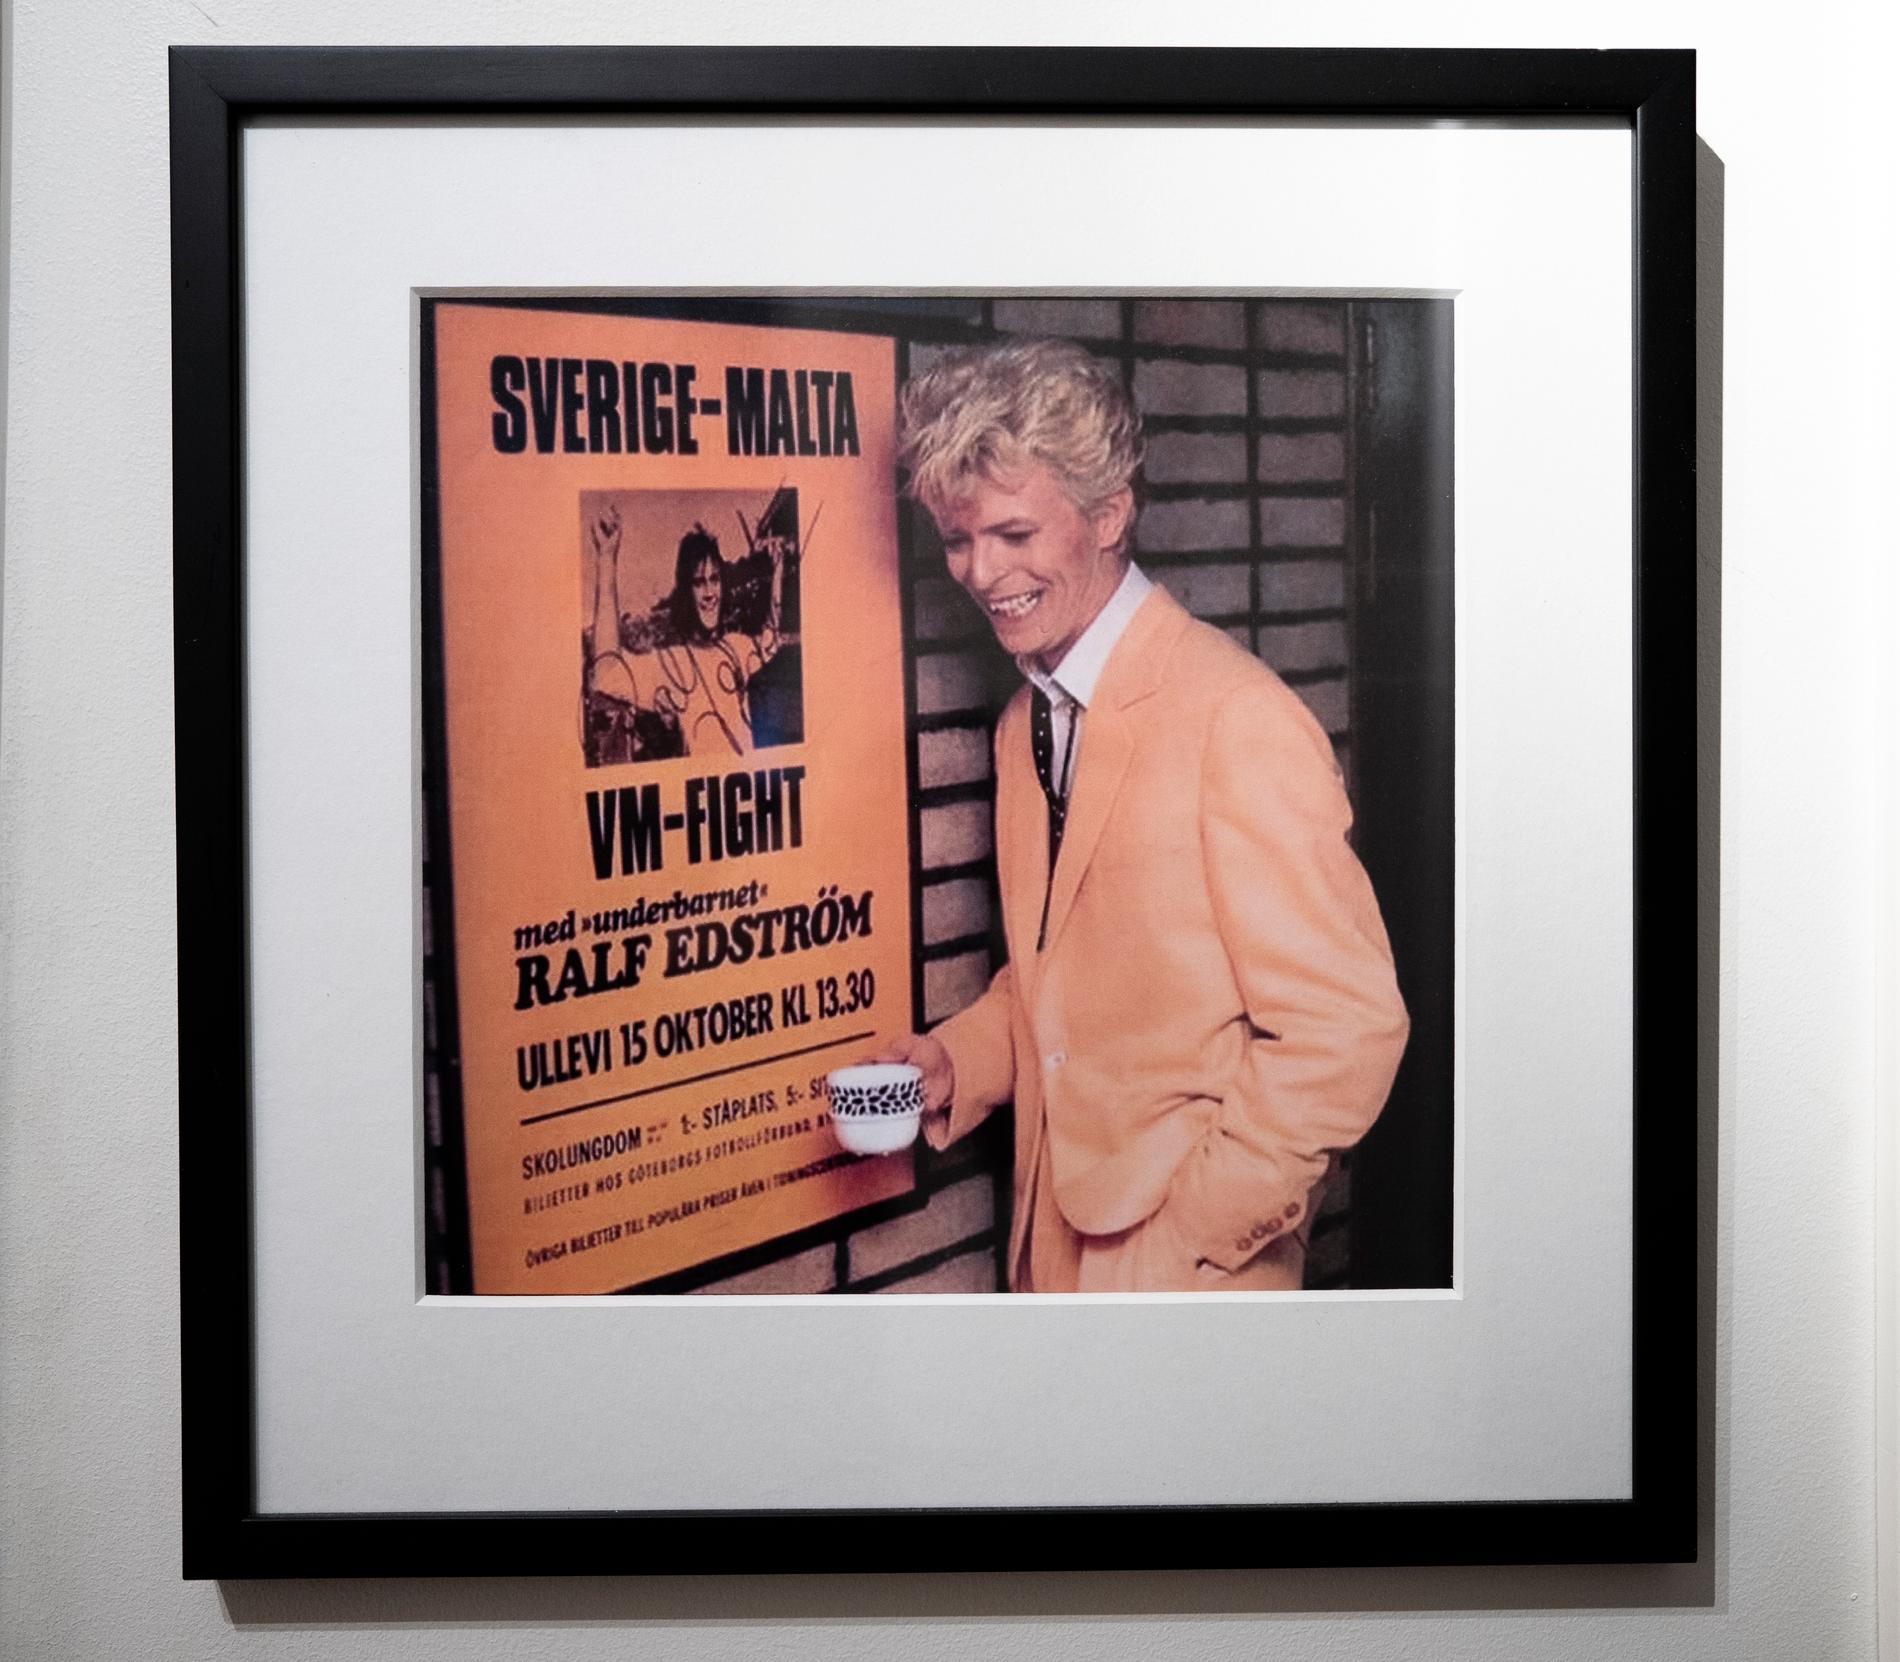 David Bowie i Sverige framför en affisch med Ralf Edström.